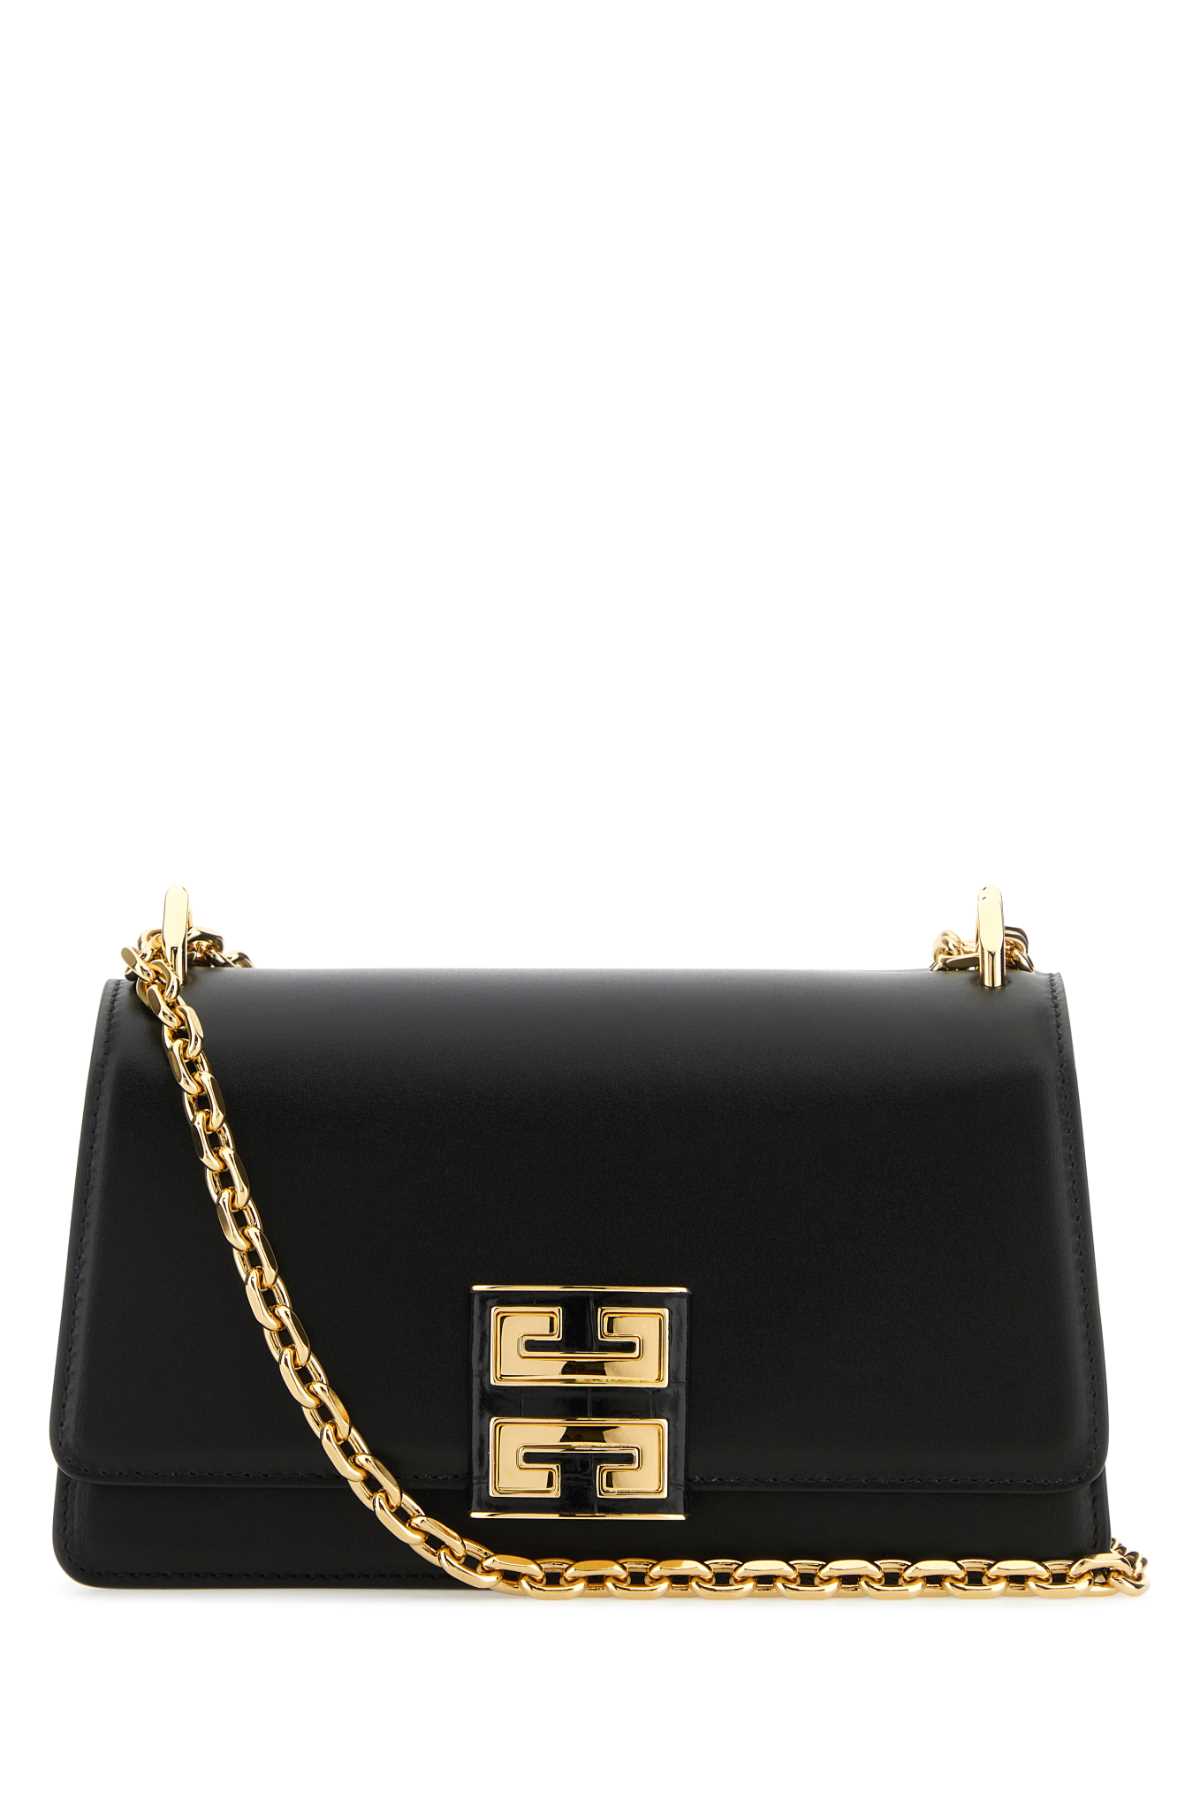 Shop Givenchy Black Leather Small 4g Shoulder Bag